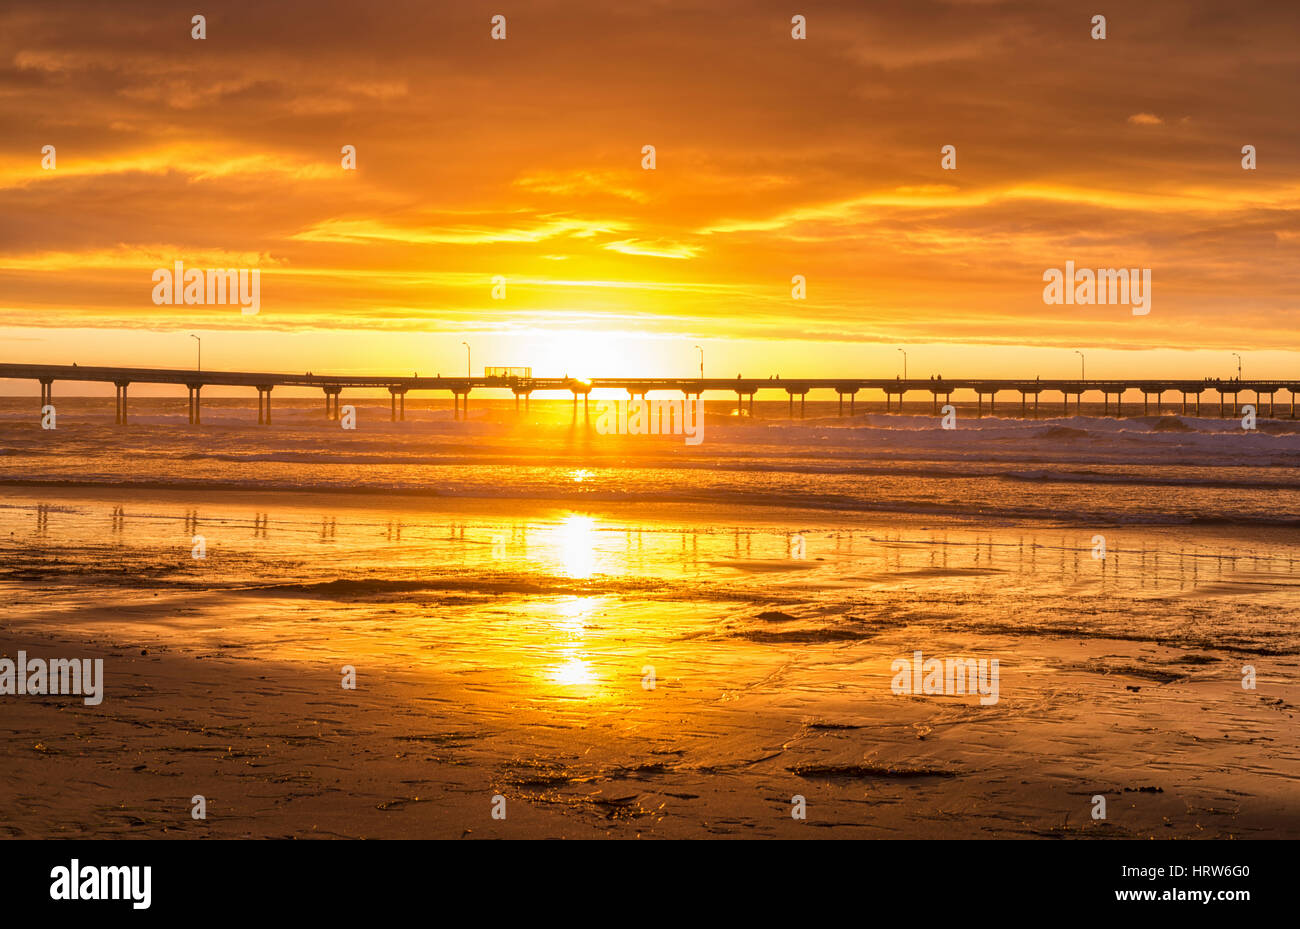 Coastal Sunset At Ocean Beach View Of The Ocean Beach Pier San Diego